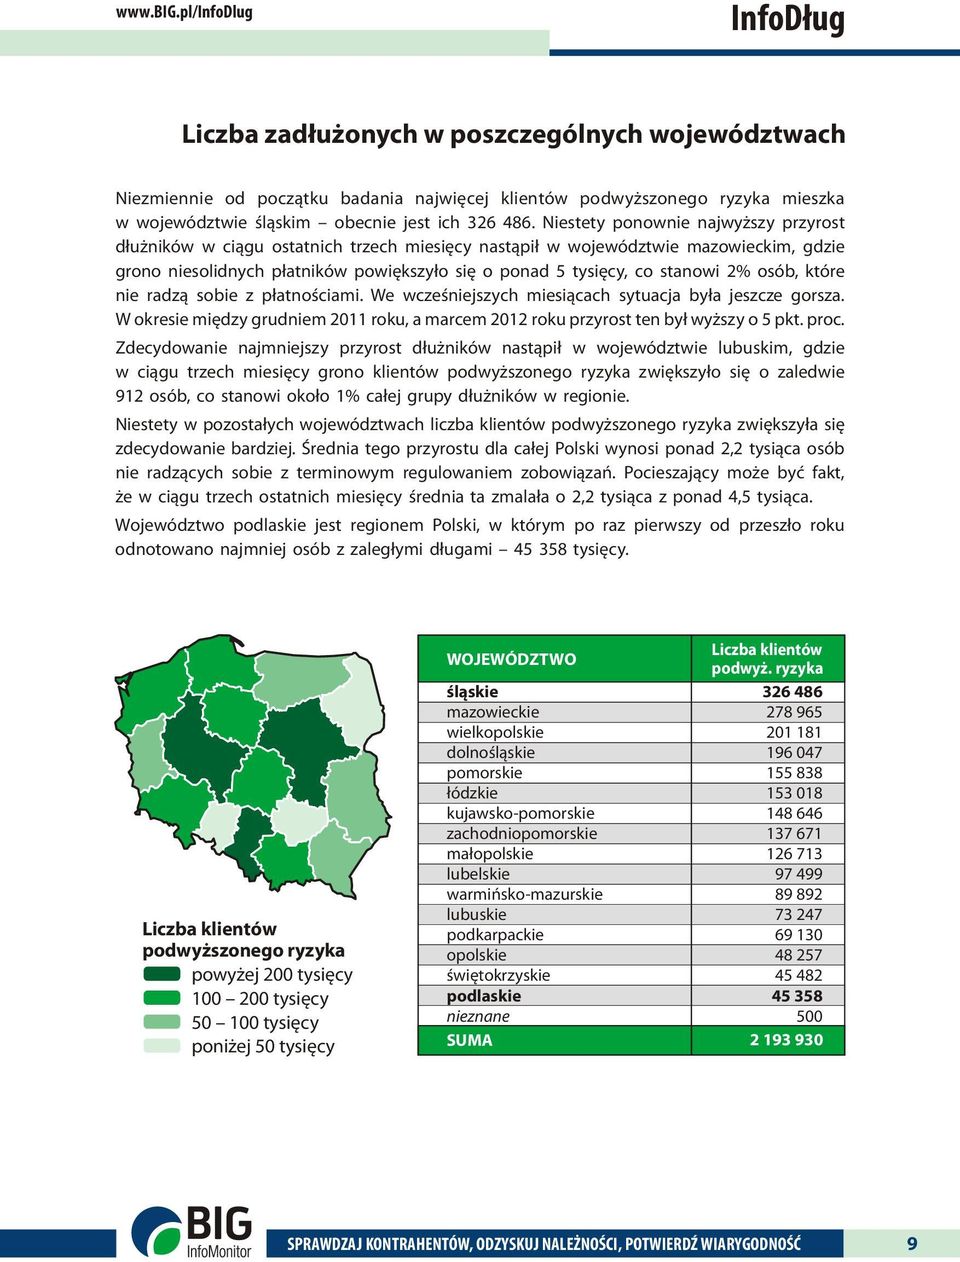 Niestety ponownie najwyższy przyrost dłużników w ciągu ostatnich trzech miesięcy nastąpił w województwie mazowieckim, gdzie grono niesolidnych płatników powiększyło się o ponad 5 tysięcy, co stanowi